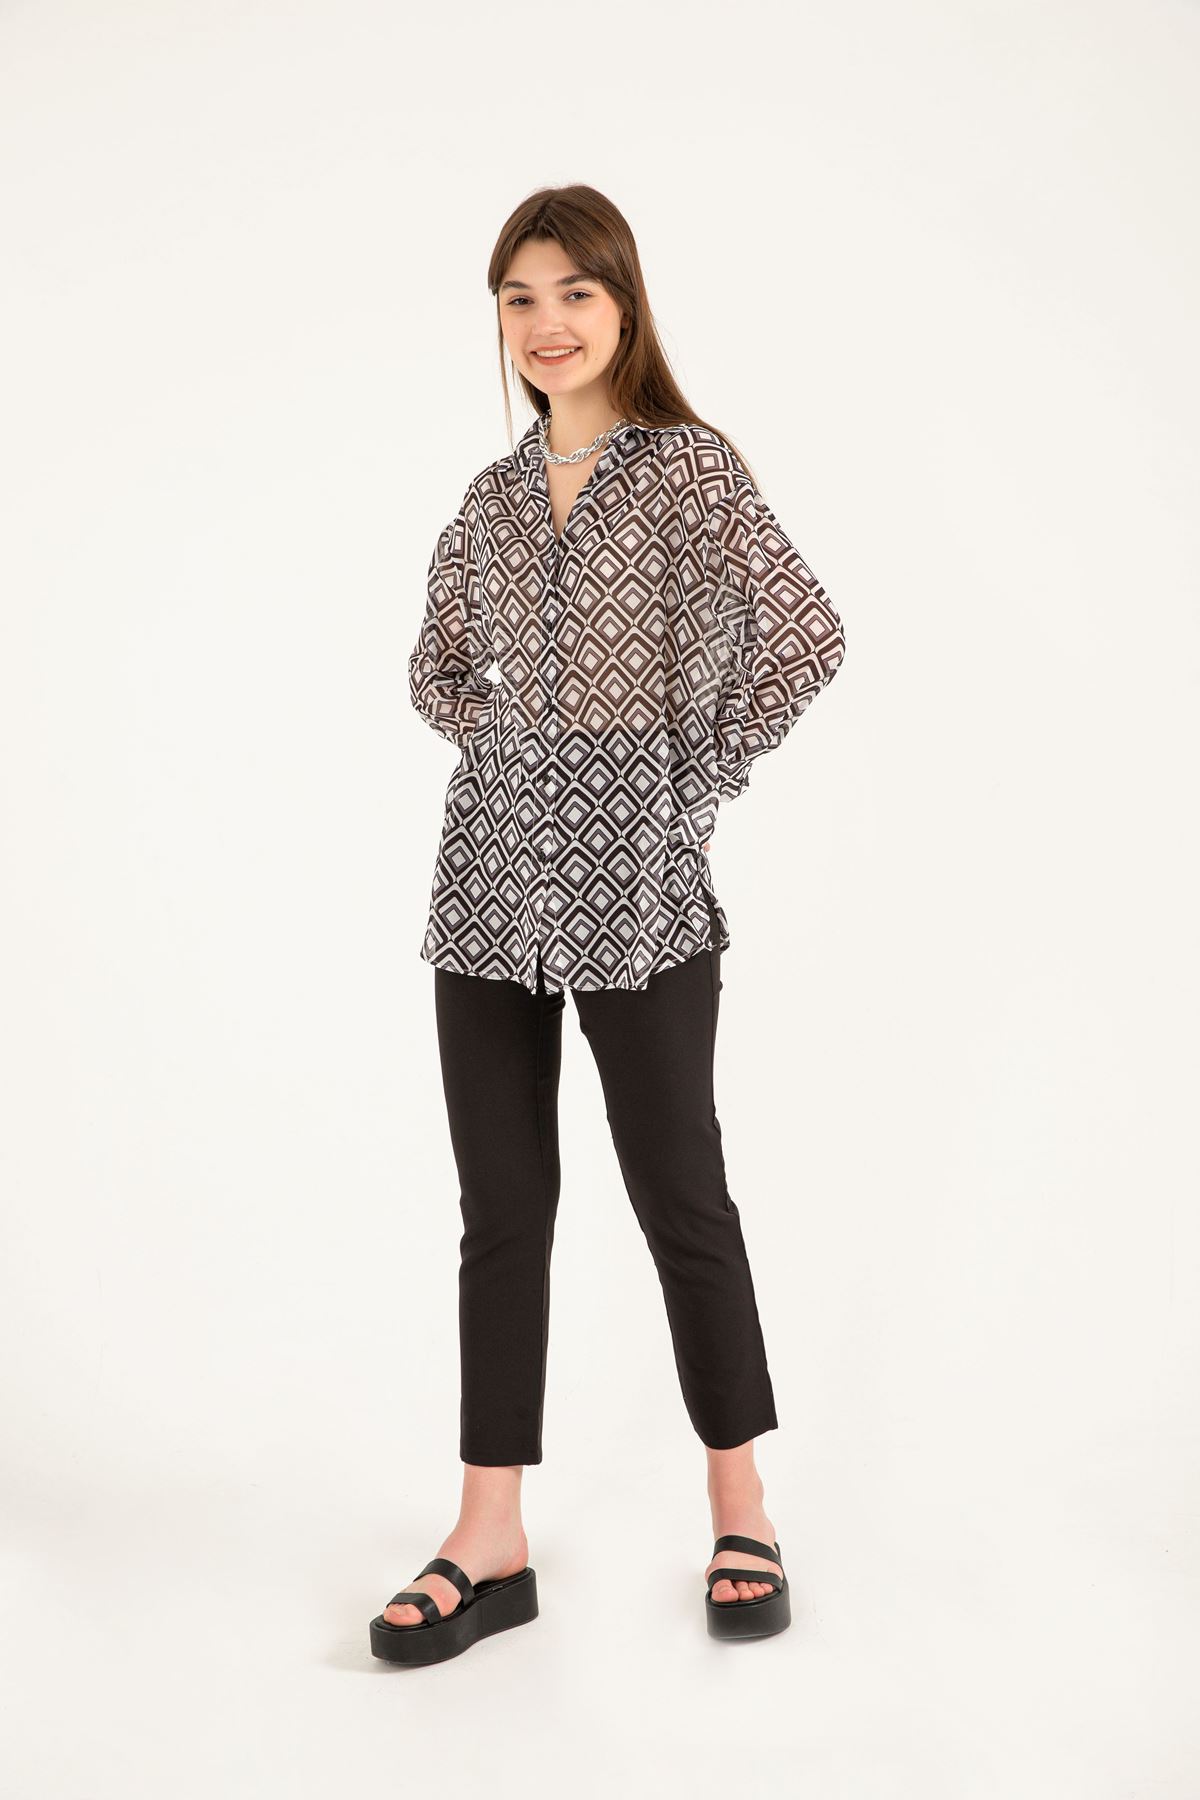 Chiffon Fabric Full Fit Geometric Pattern Women Shirt - Black